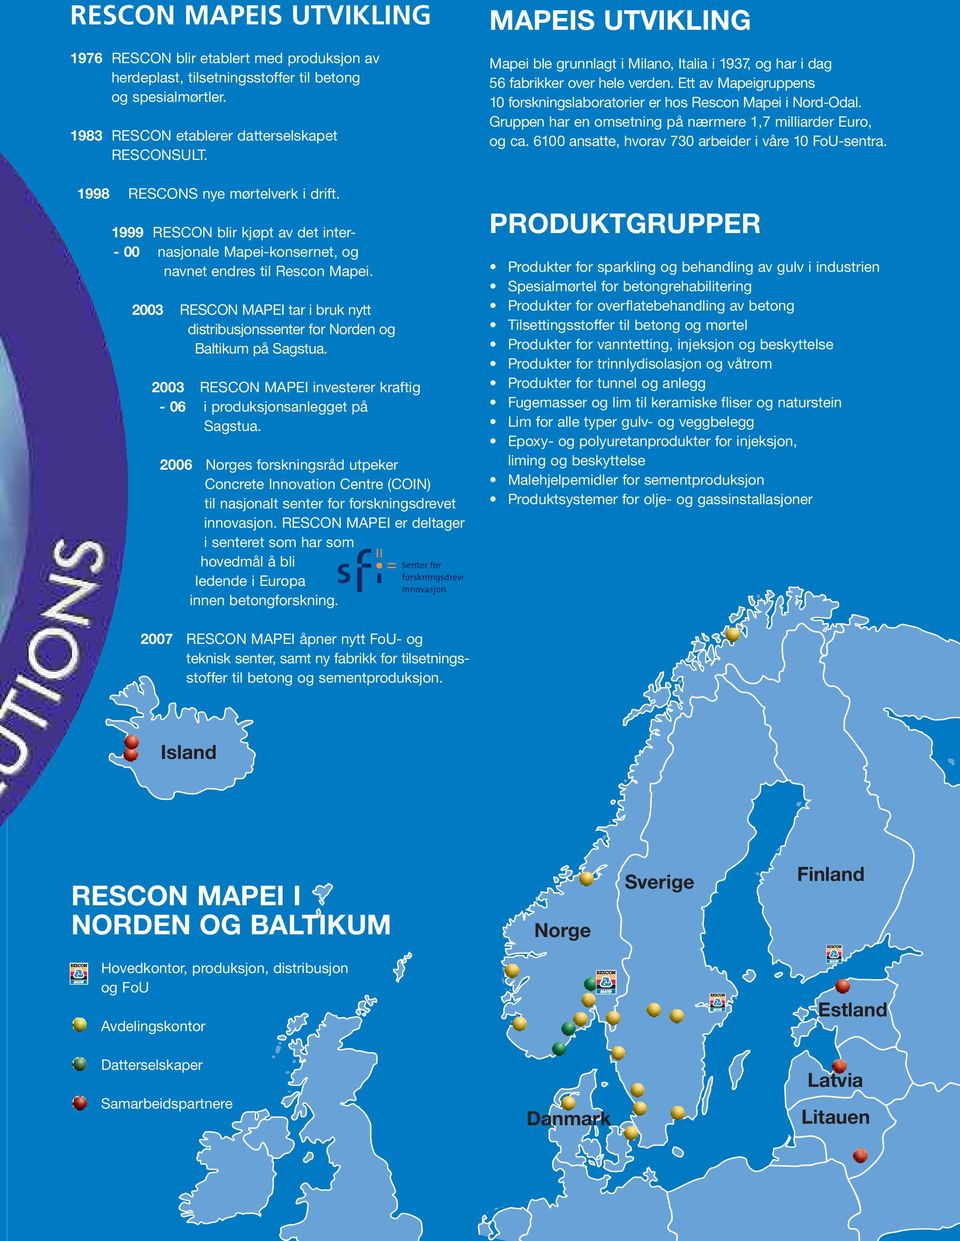 2003 RESCON MAPEI tar i bruk nytt distribusjonssenter for Norden og Baltikum på Sagstua. 2003 RESCON MAPEI investerer kraftig - 06 i produksjonsanlegget på Sagstua.